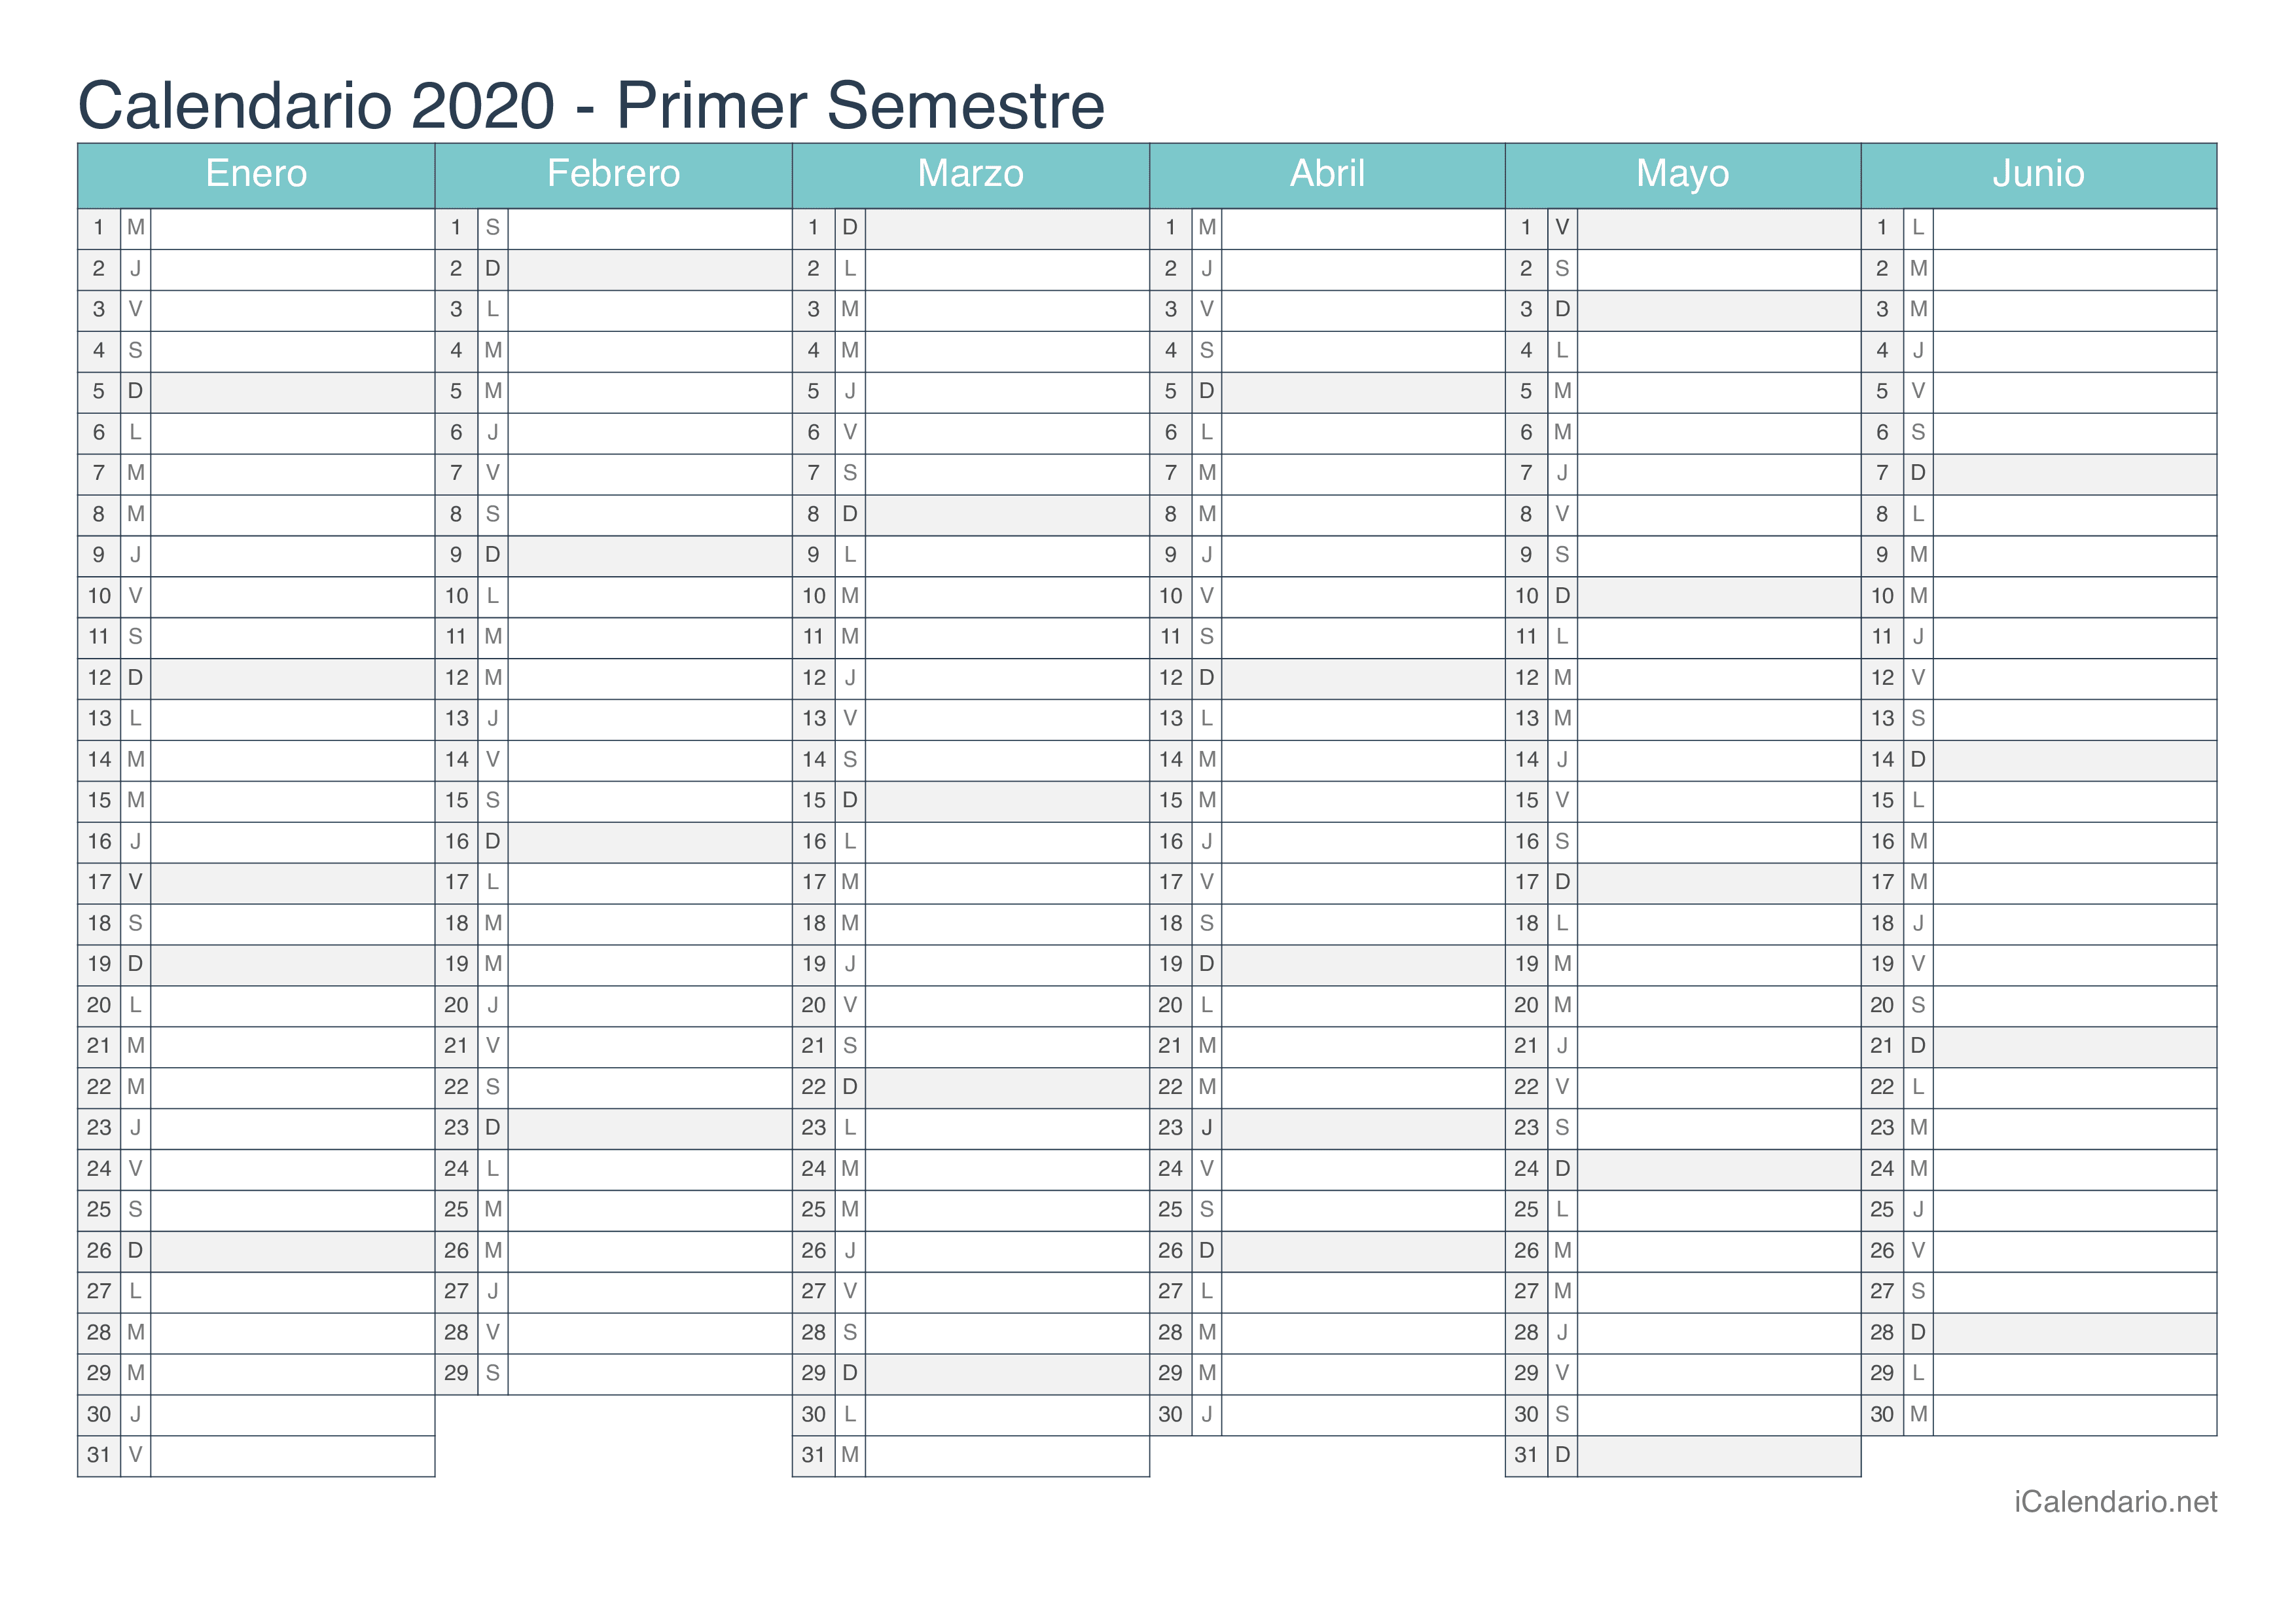 Calendario por semestre 2020 - Turquesa